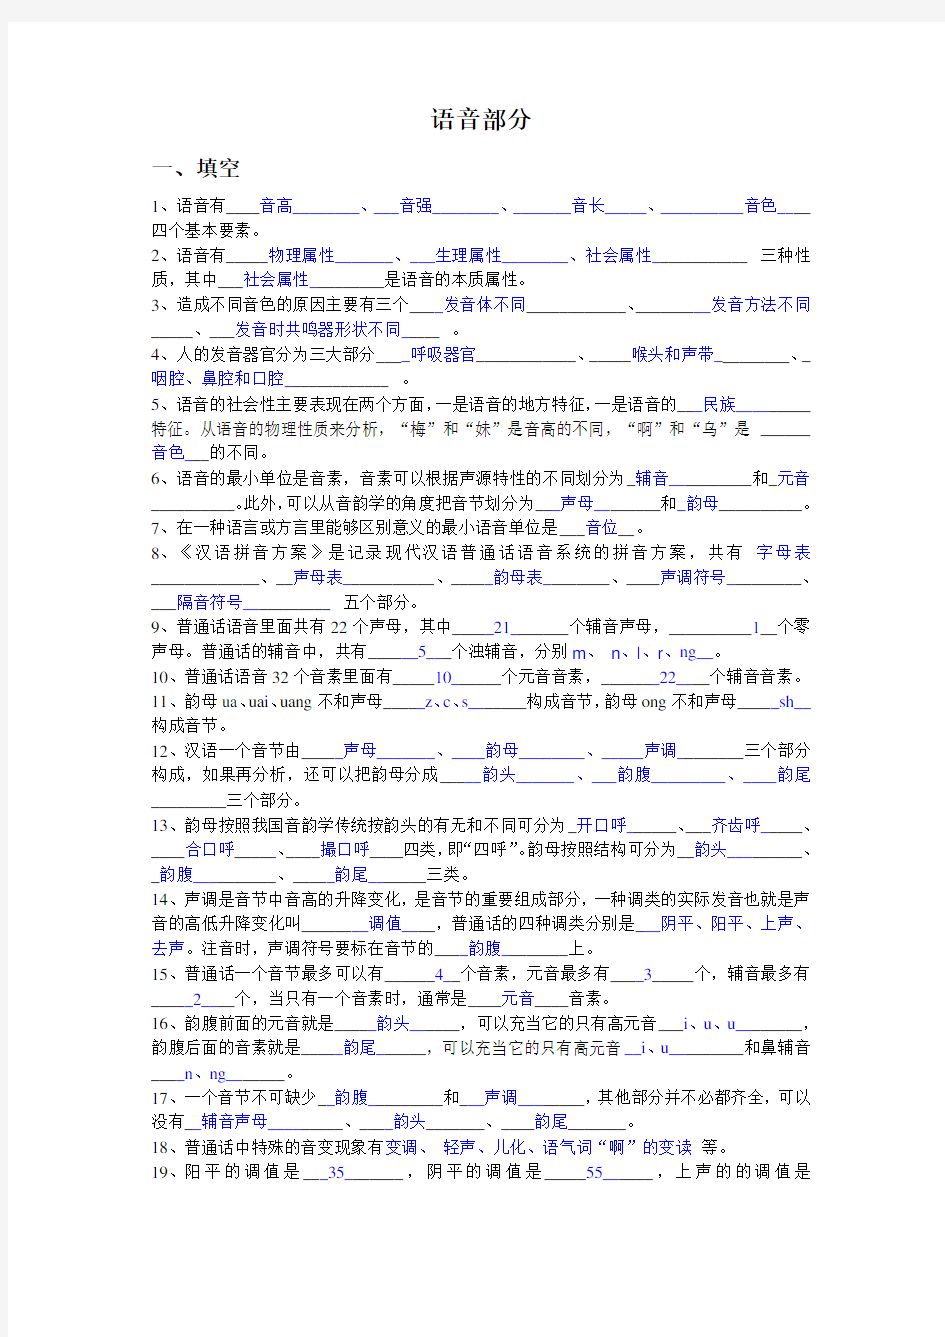 现代汉语平时作业题目(语音部分)-答案知识分享